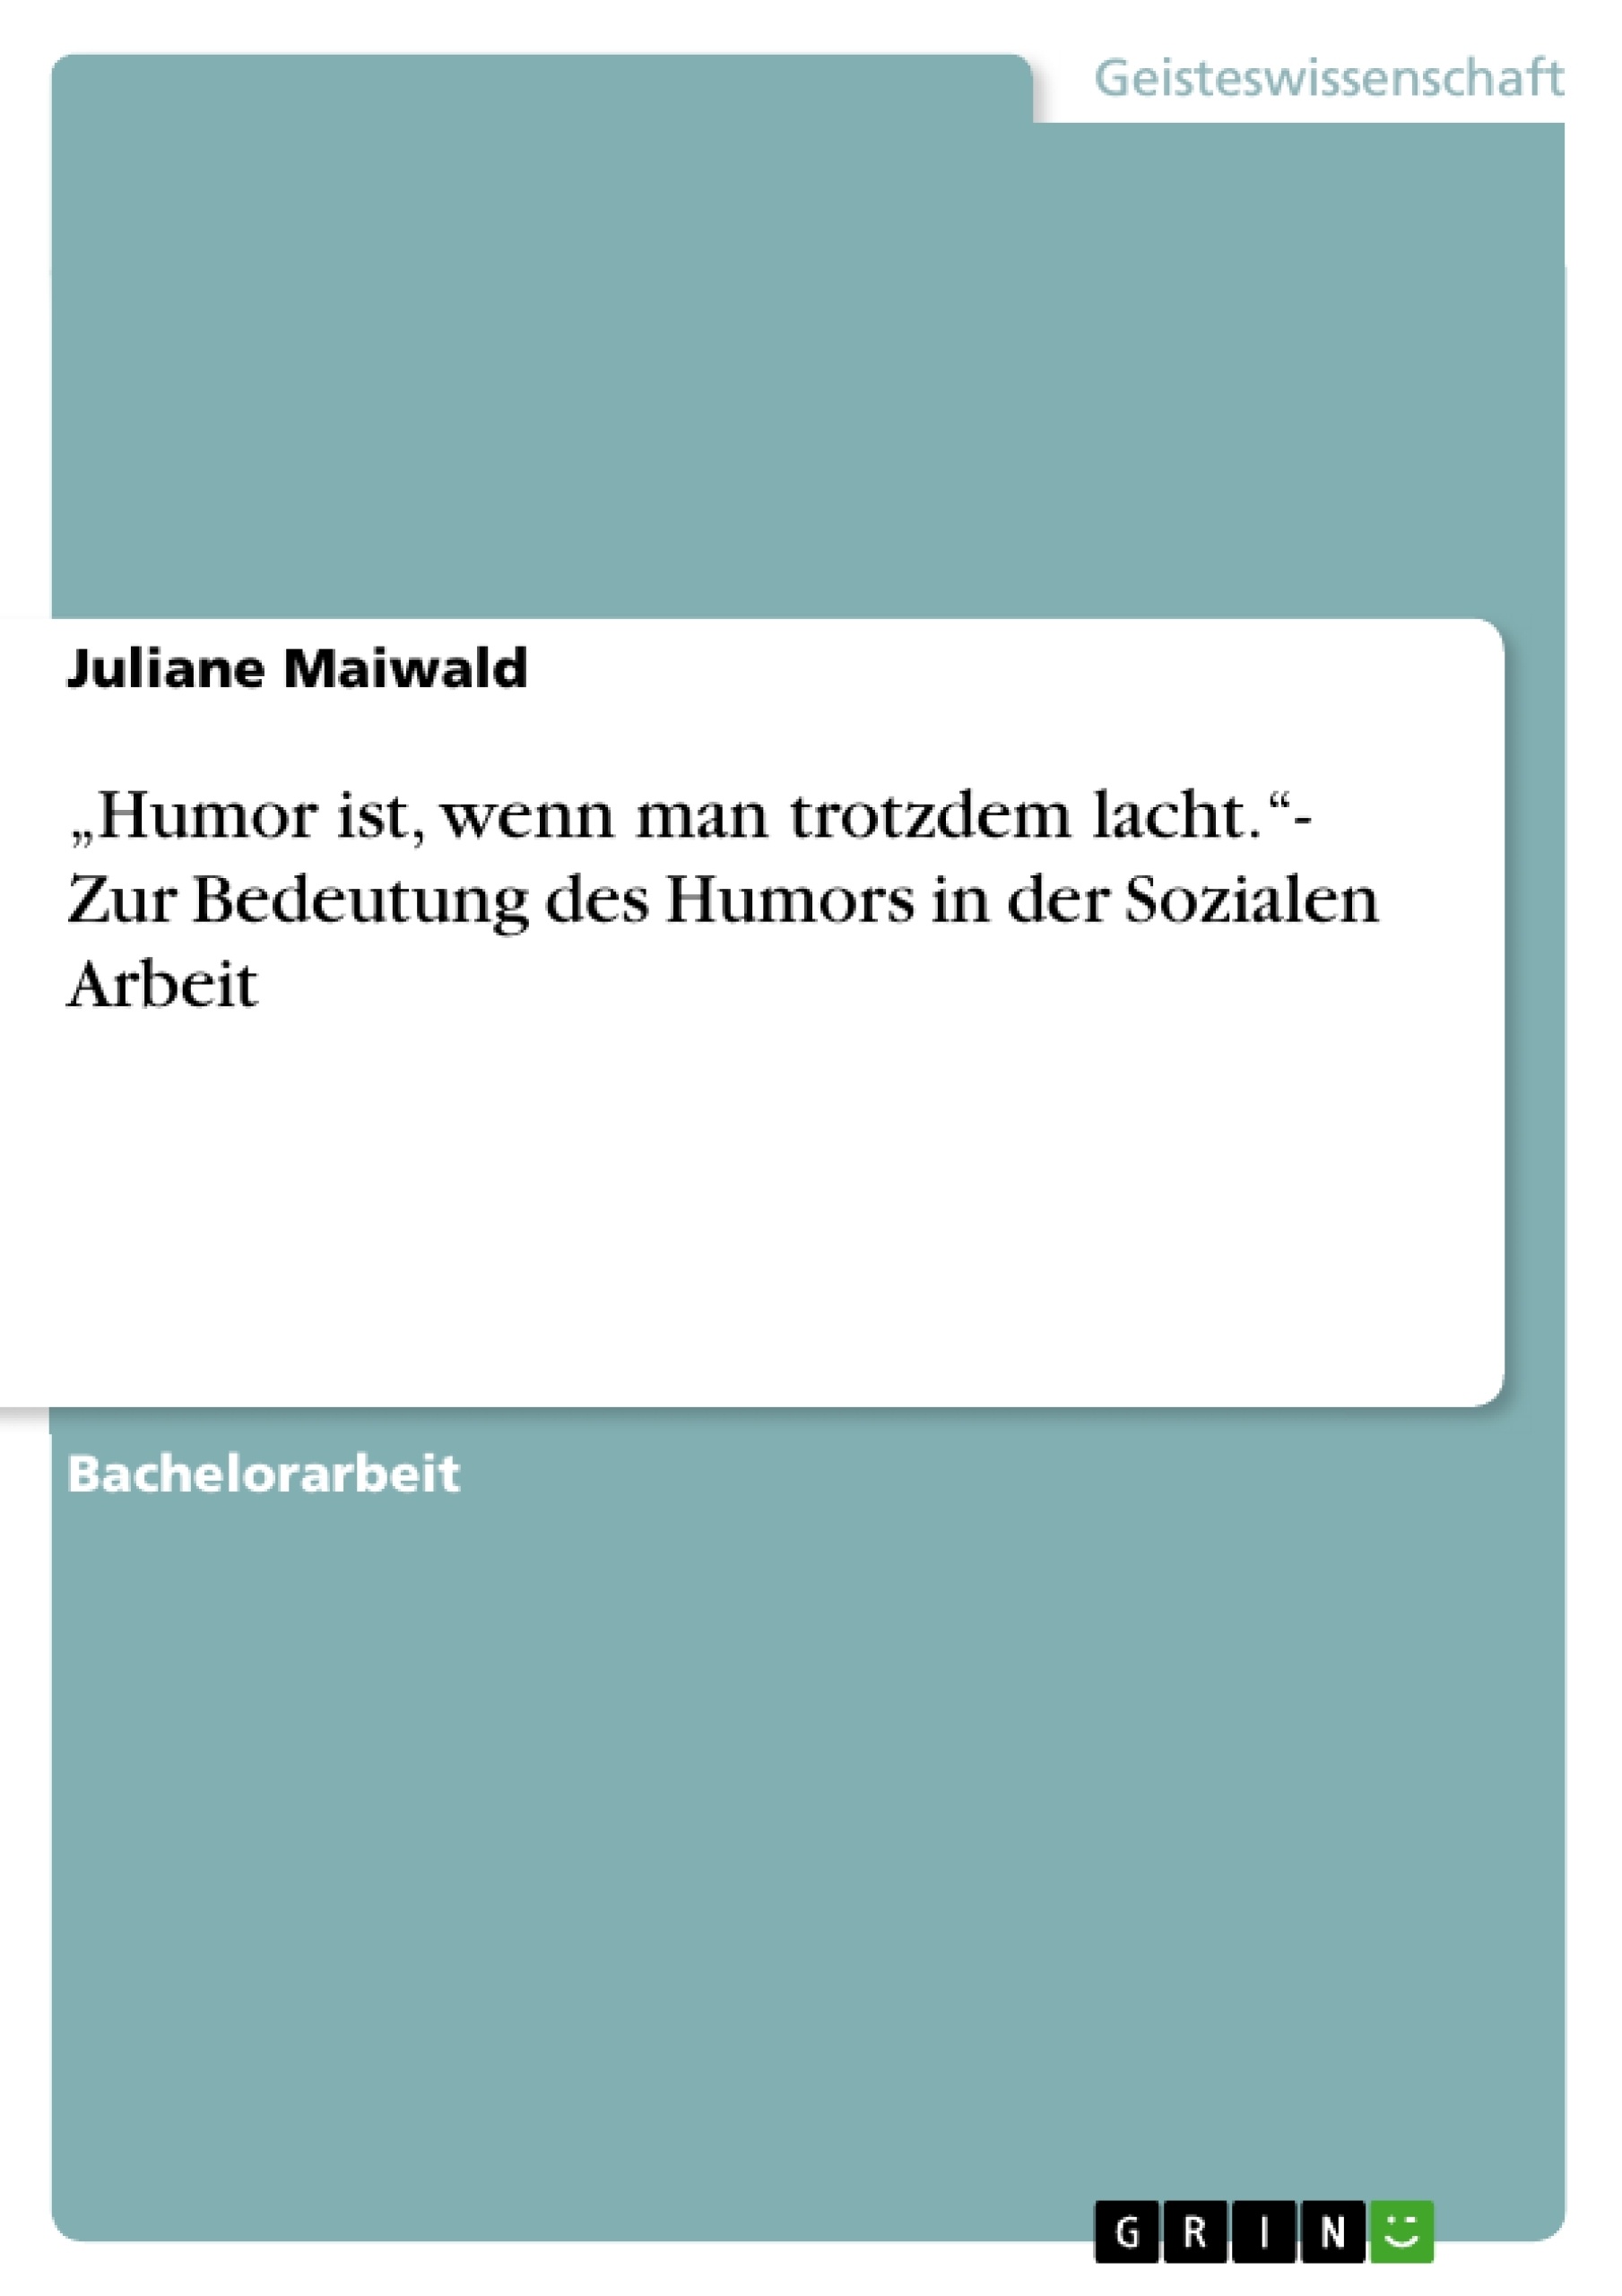 Title: „Humor ist, wenn man trotzdem lacht.“- Zur Bedeutung des Humors in der Sozialen Arbeit